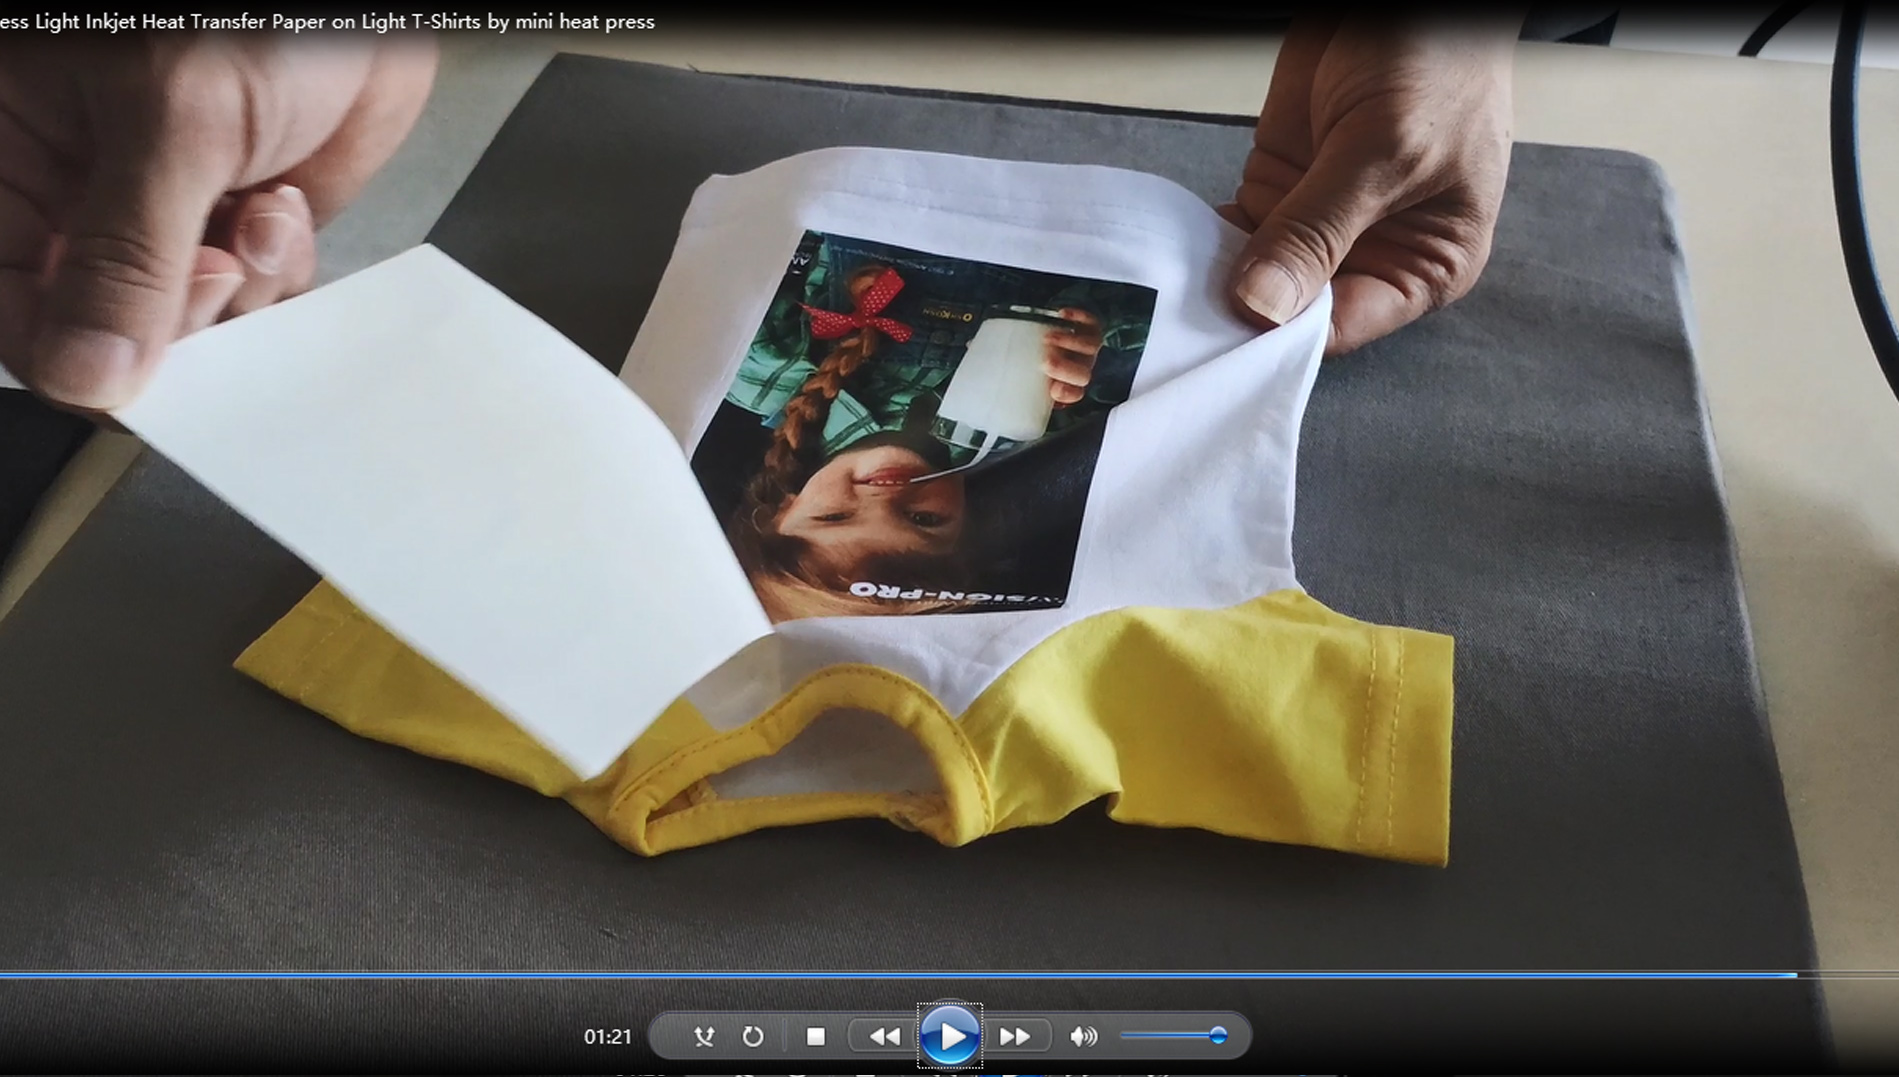 So pressen Sie leichtes Inkjet-Wärmetransferpapier mit einer Mini-Heißpresse auf helle T-Shirts